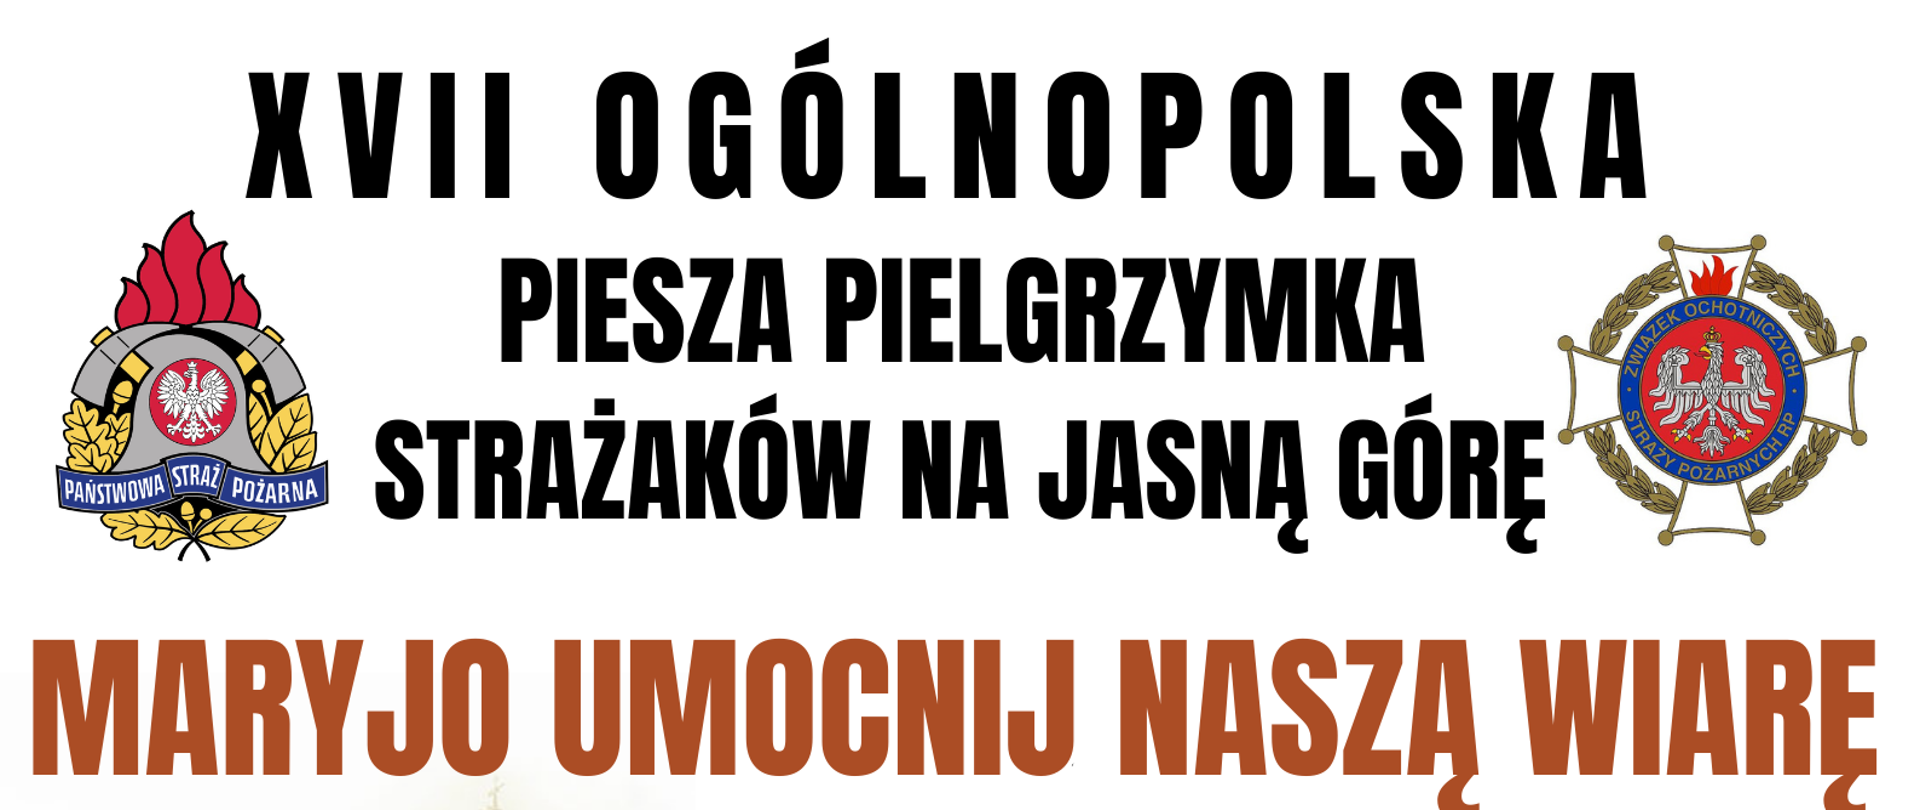 Plakat przedstawiający trasę ogólnopolskiej pielgrzymki strażaków na jasną górę w częstochowie.